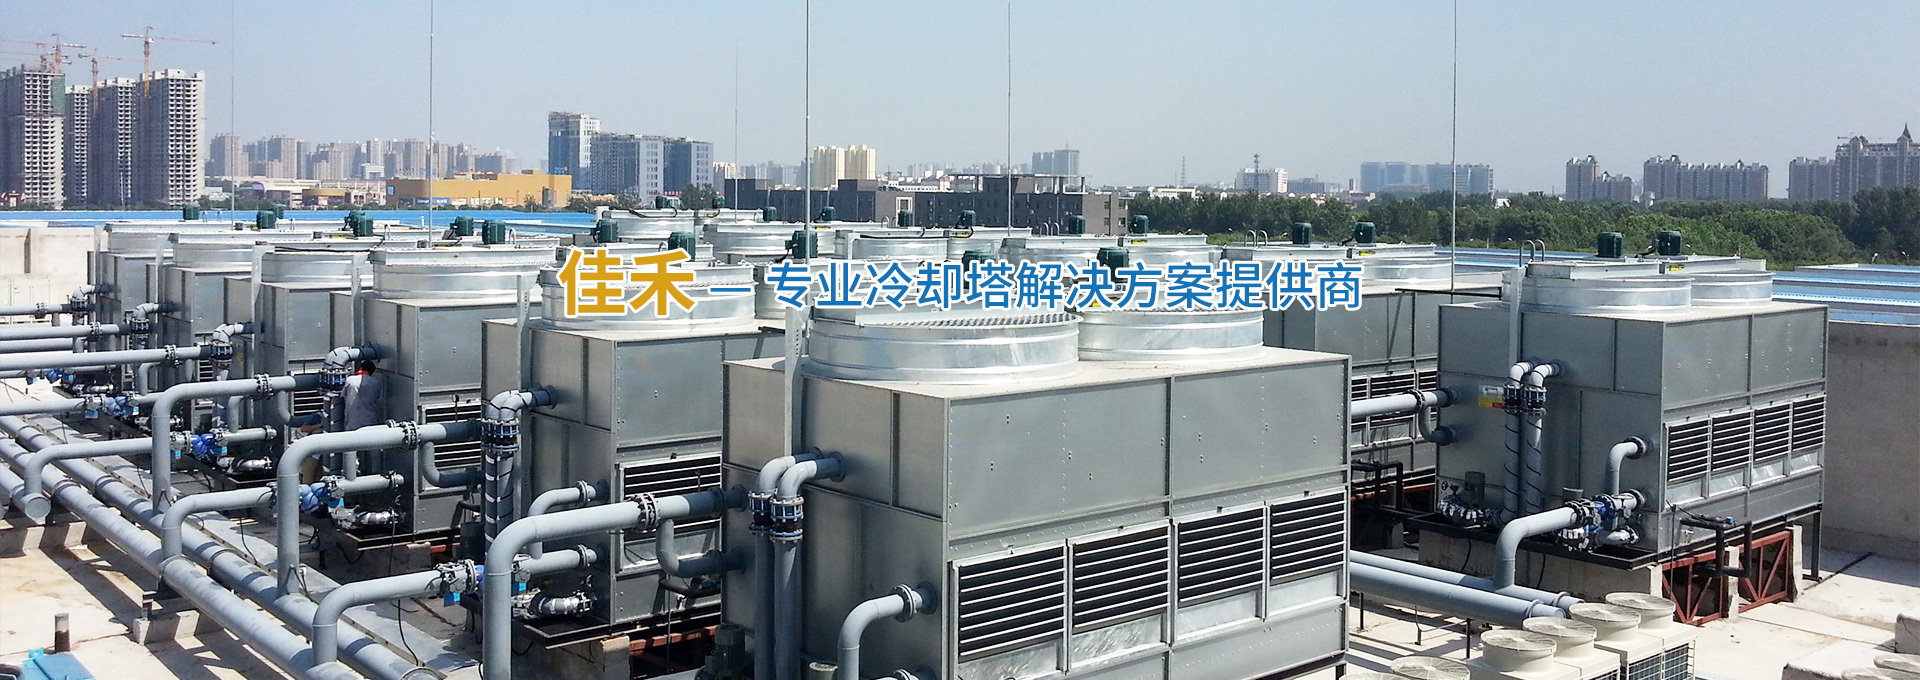 专业冷却塔解决方案提供商_无锡佳禾冷却设备